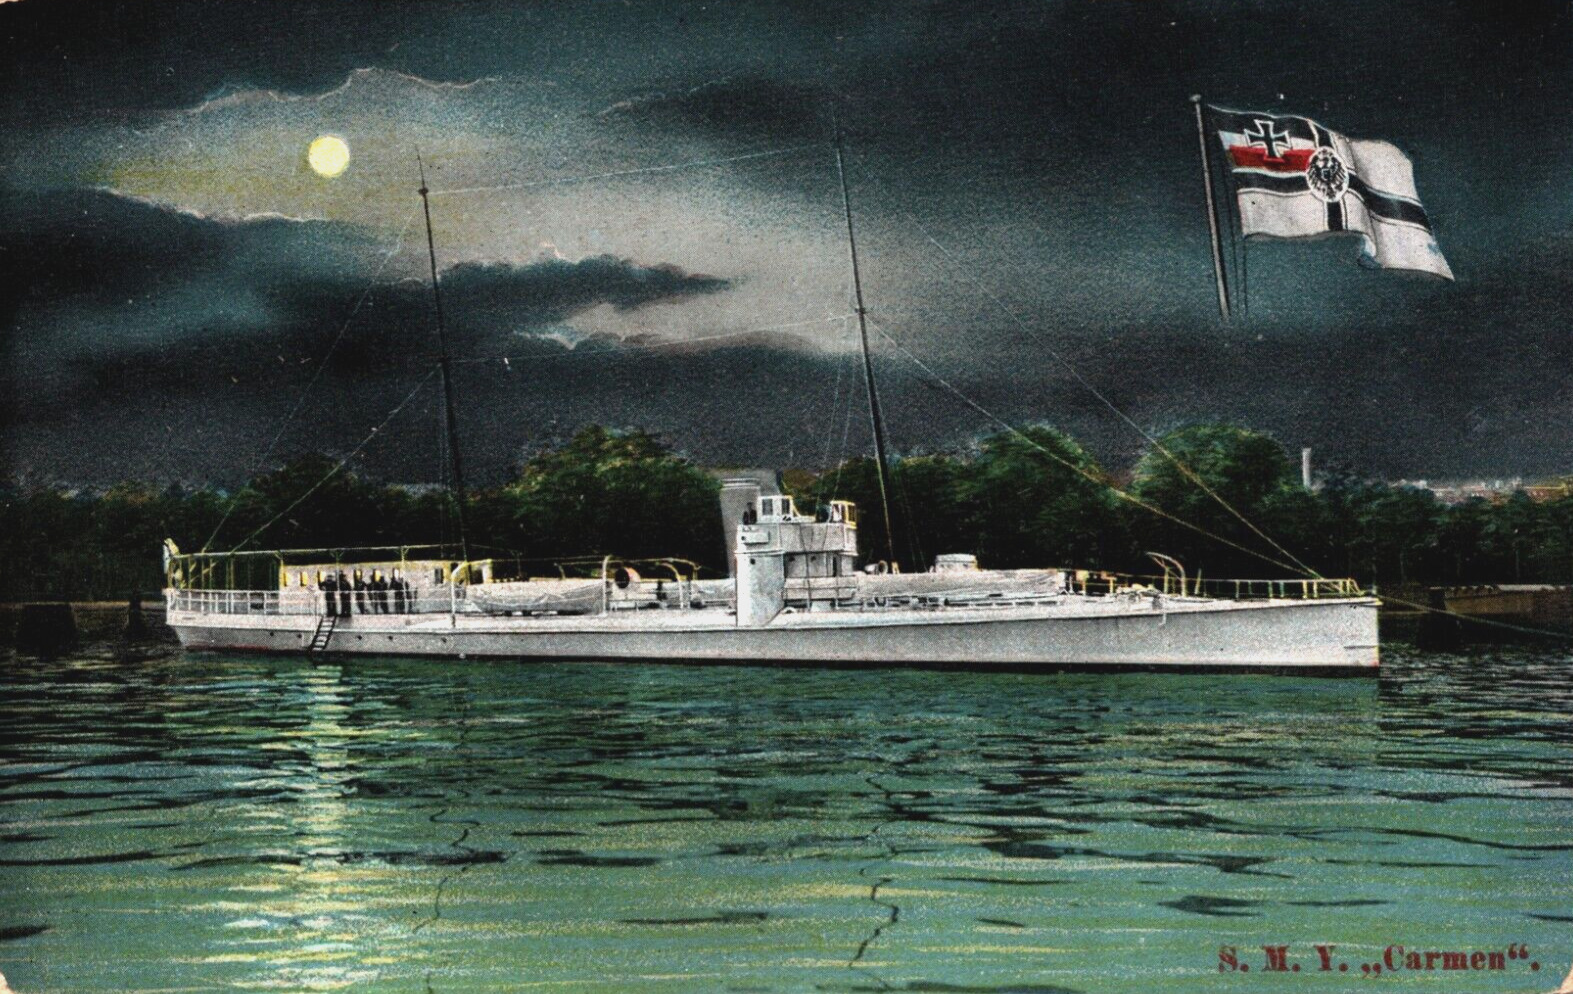 S.M.Y. Carmen Cargo Ship Vintage Postcard C256